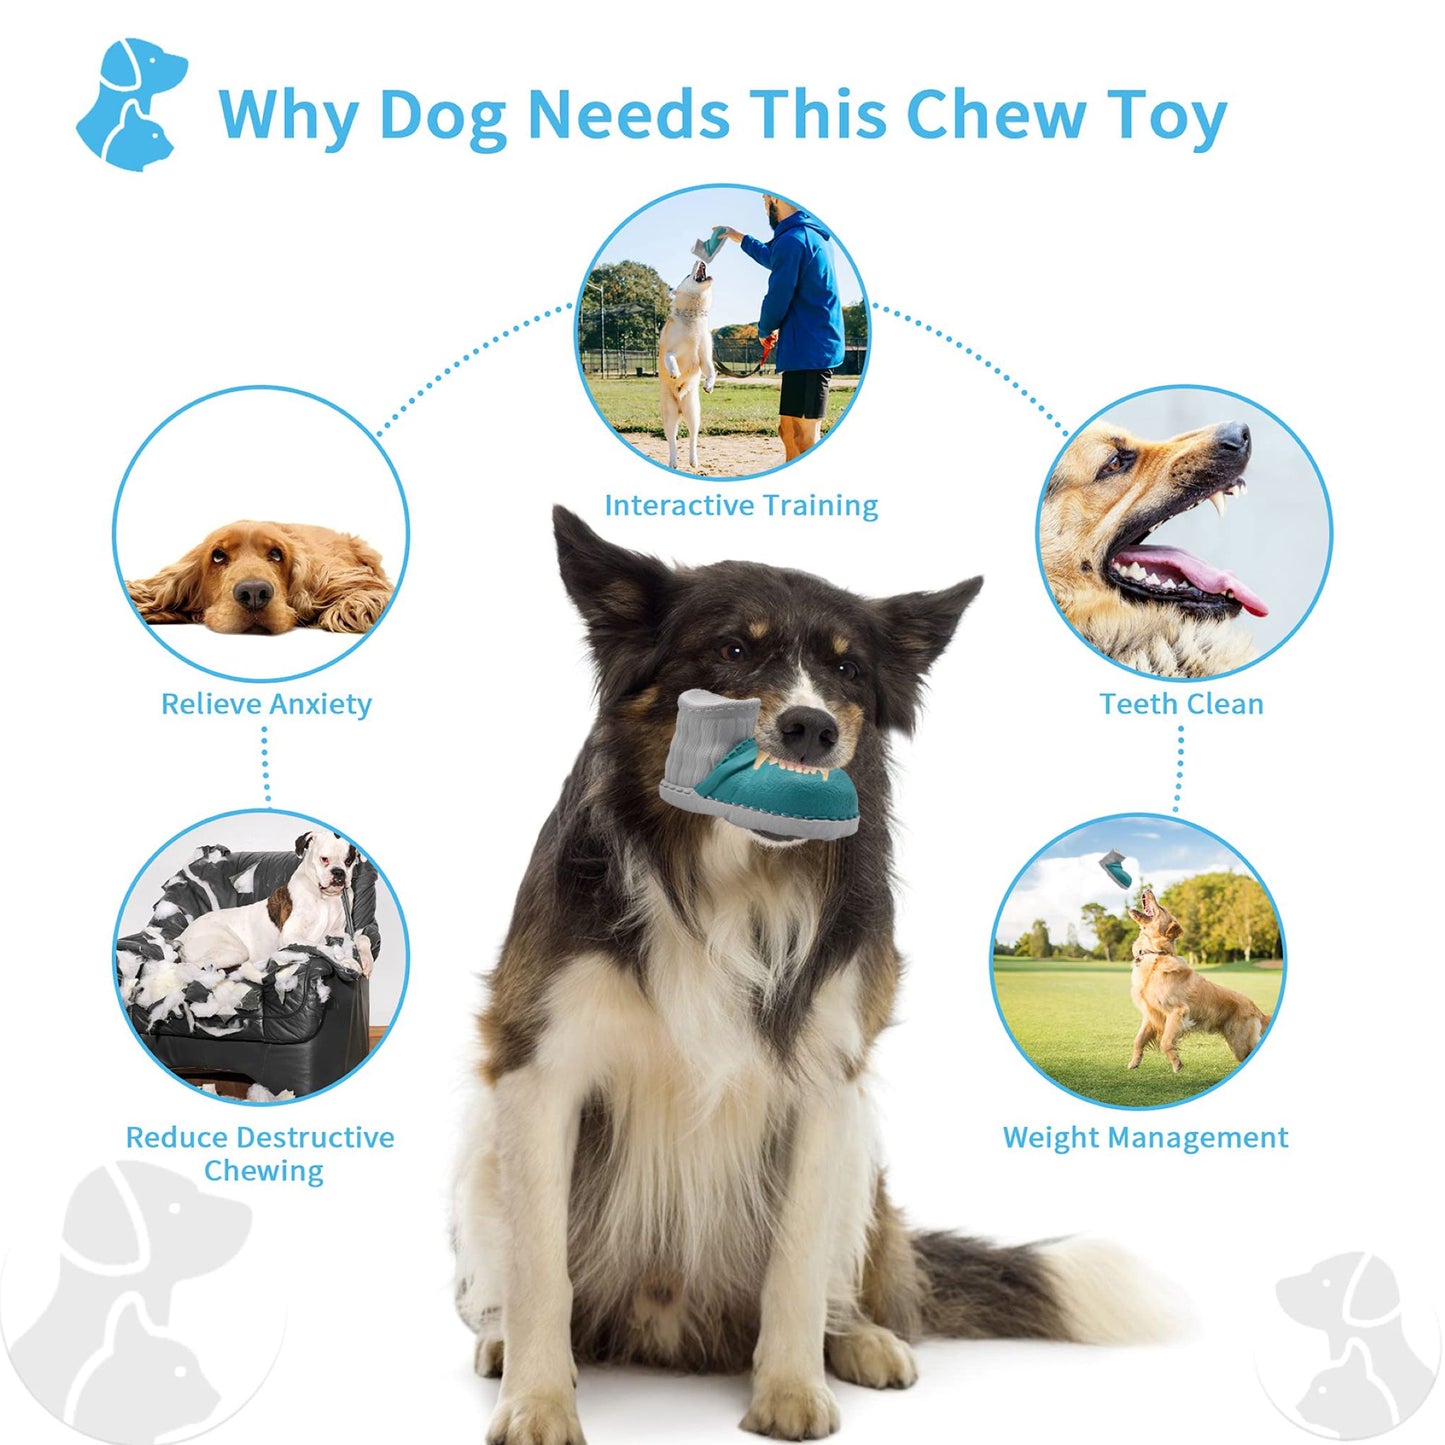 Royal Pets 犬用噛むおもちゃ ブーツ 食べ物漏れゴム犬用おもちゃ